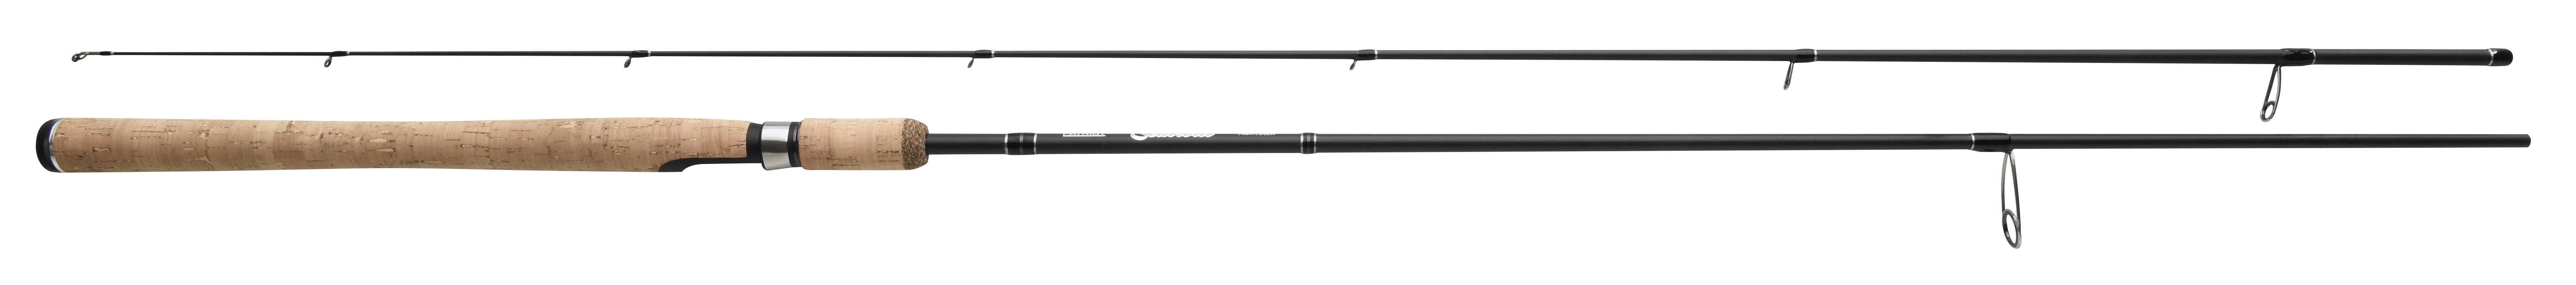 Patriot Seatrout rod, 9' 274cm, 10-30g, 2-piece